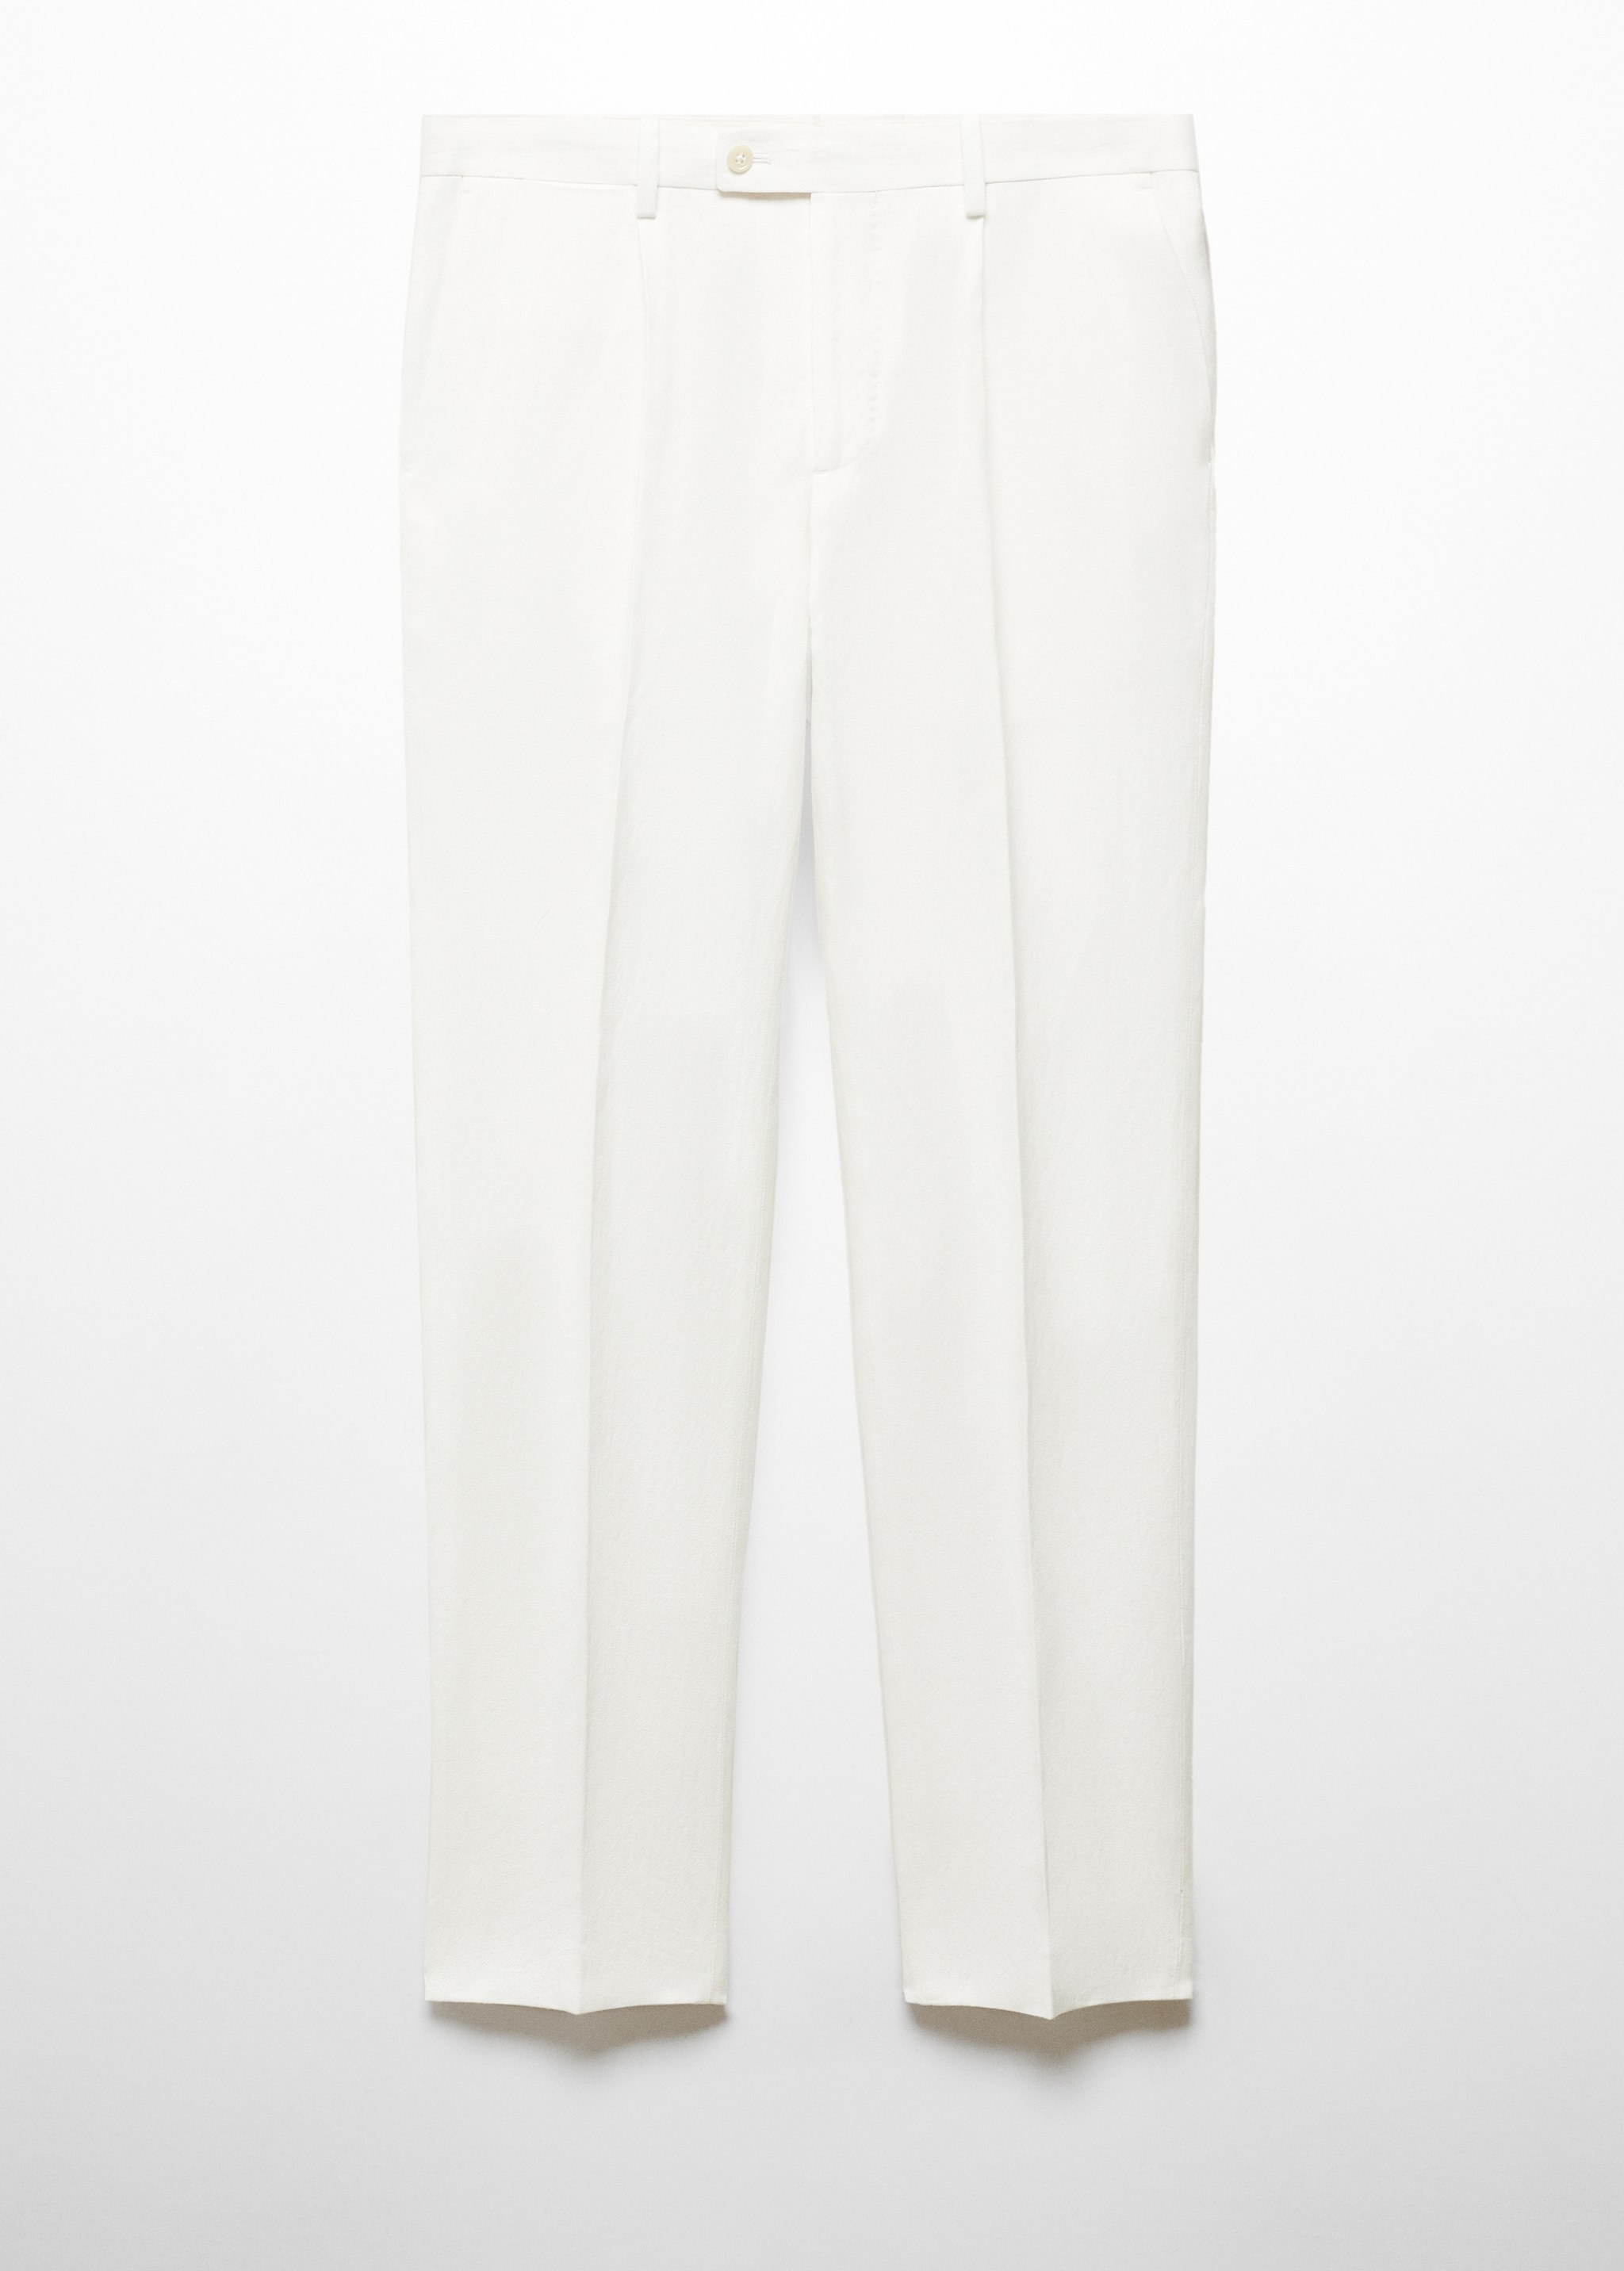 Pantalon costume slim-fit coton lin - Article sans modèle